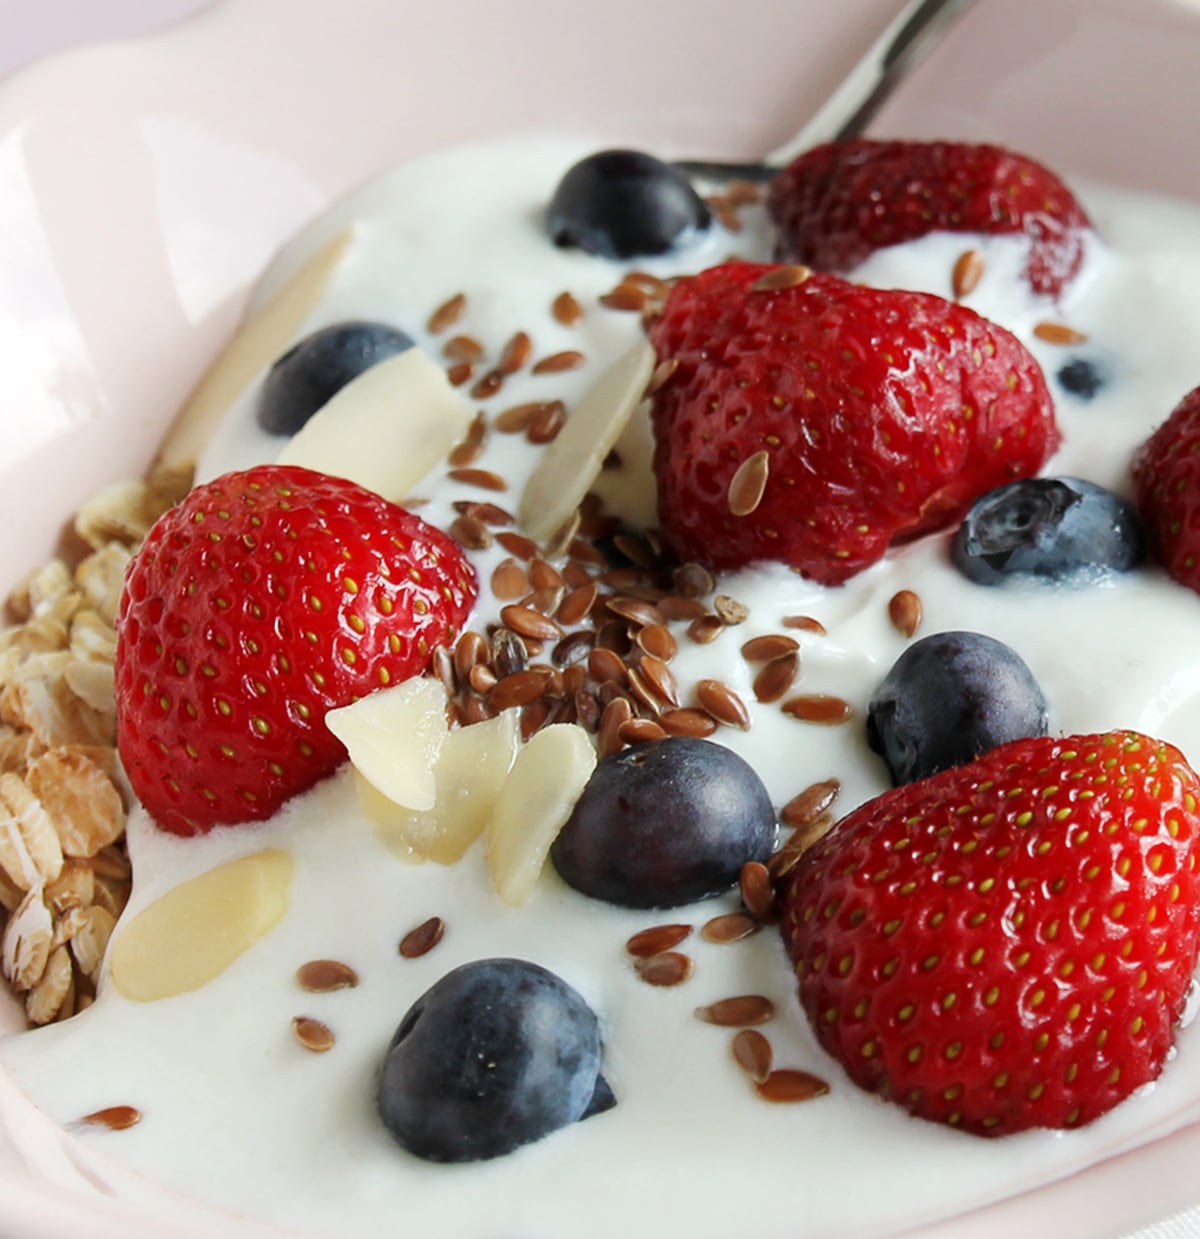 Yogurt and mixed berries